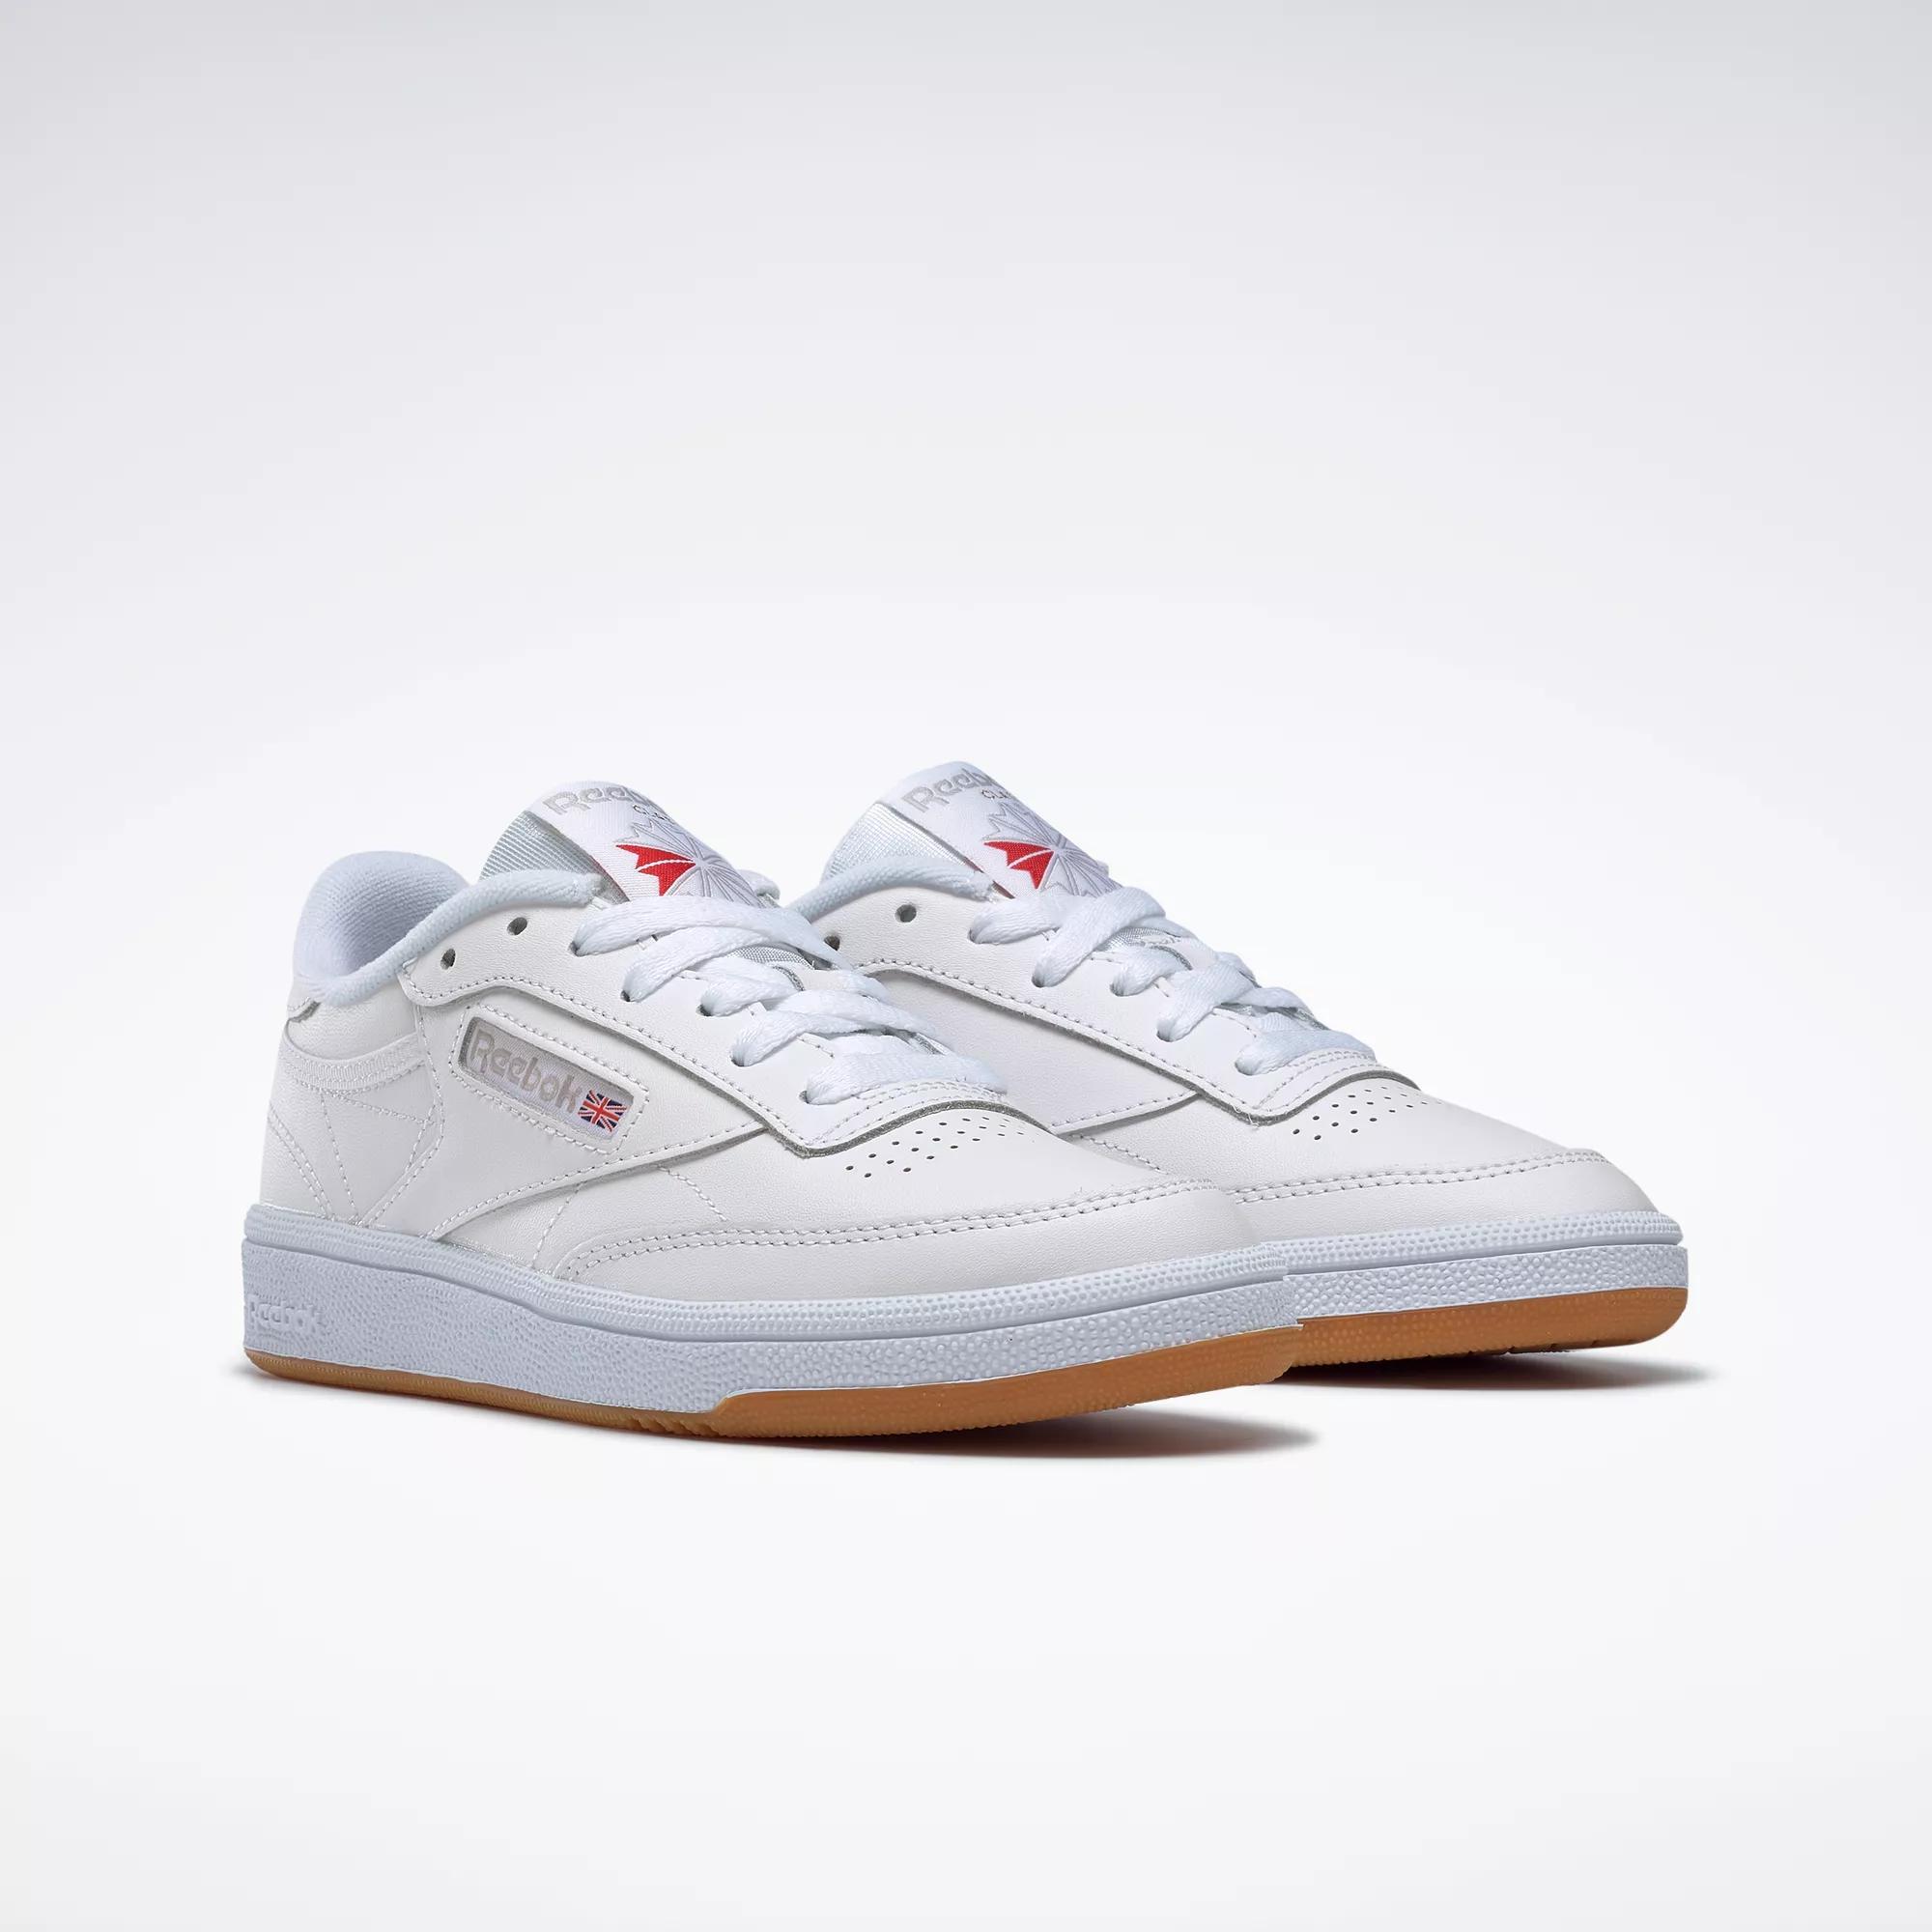 Club C 85 Shoes - White / Light Grey / Gum | Reebok